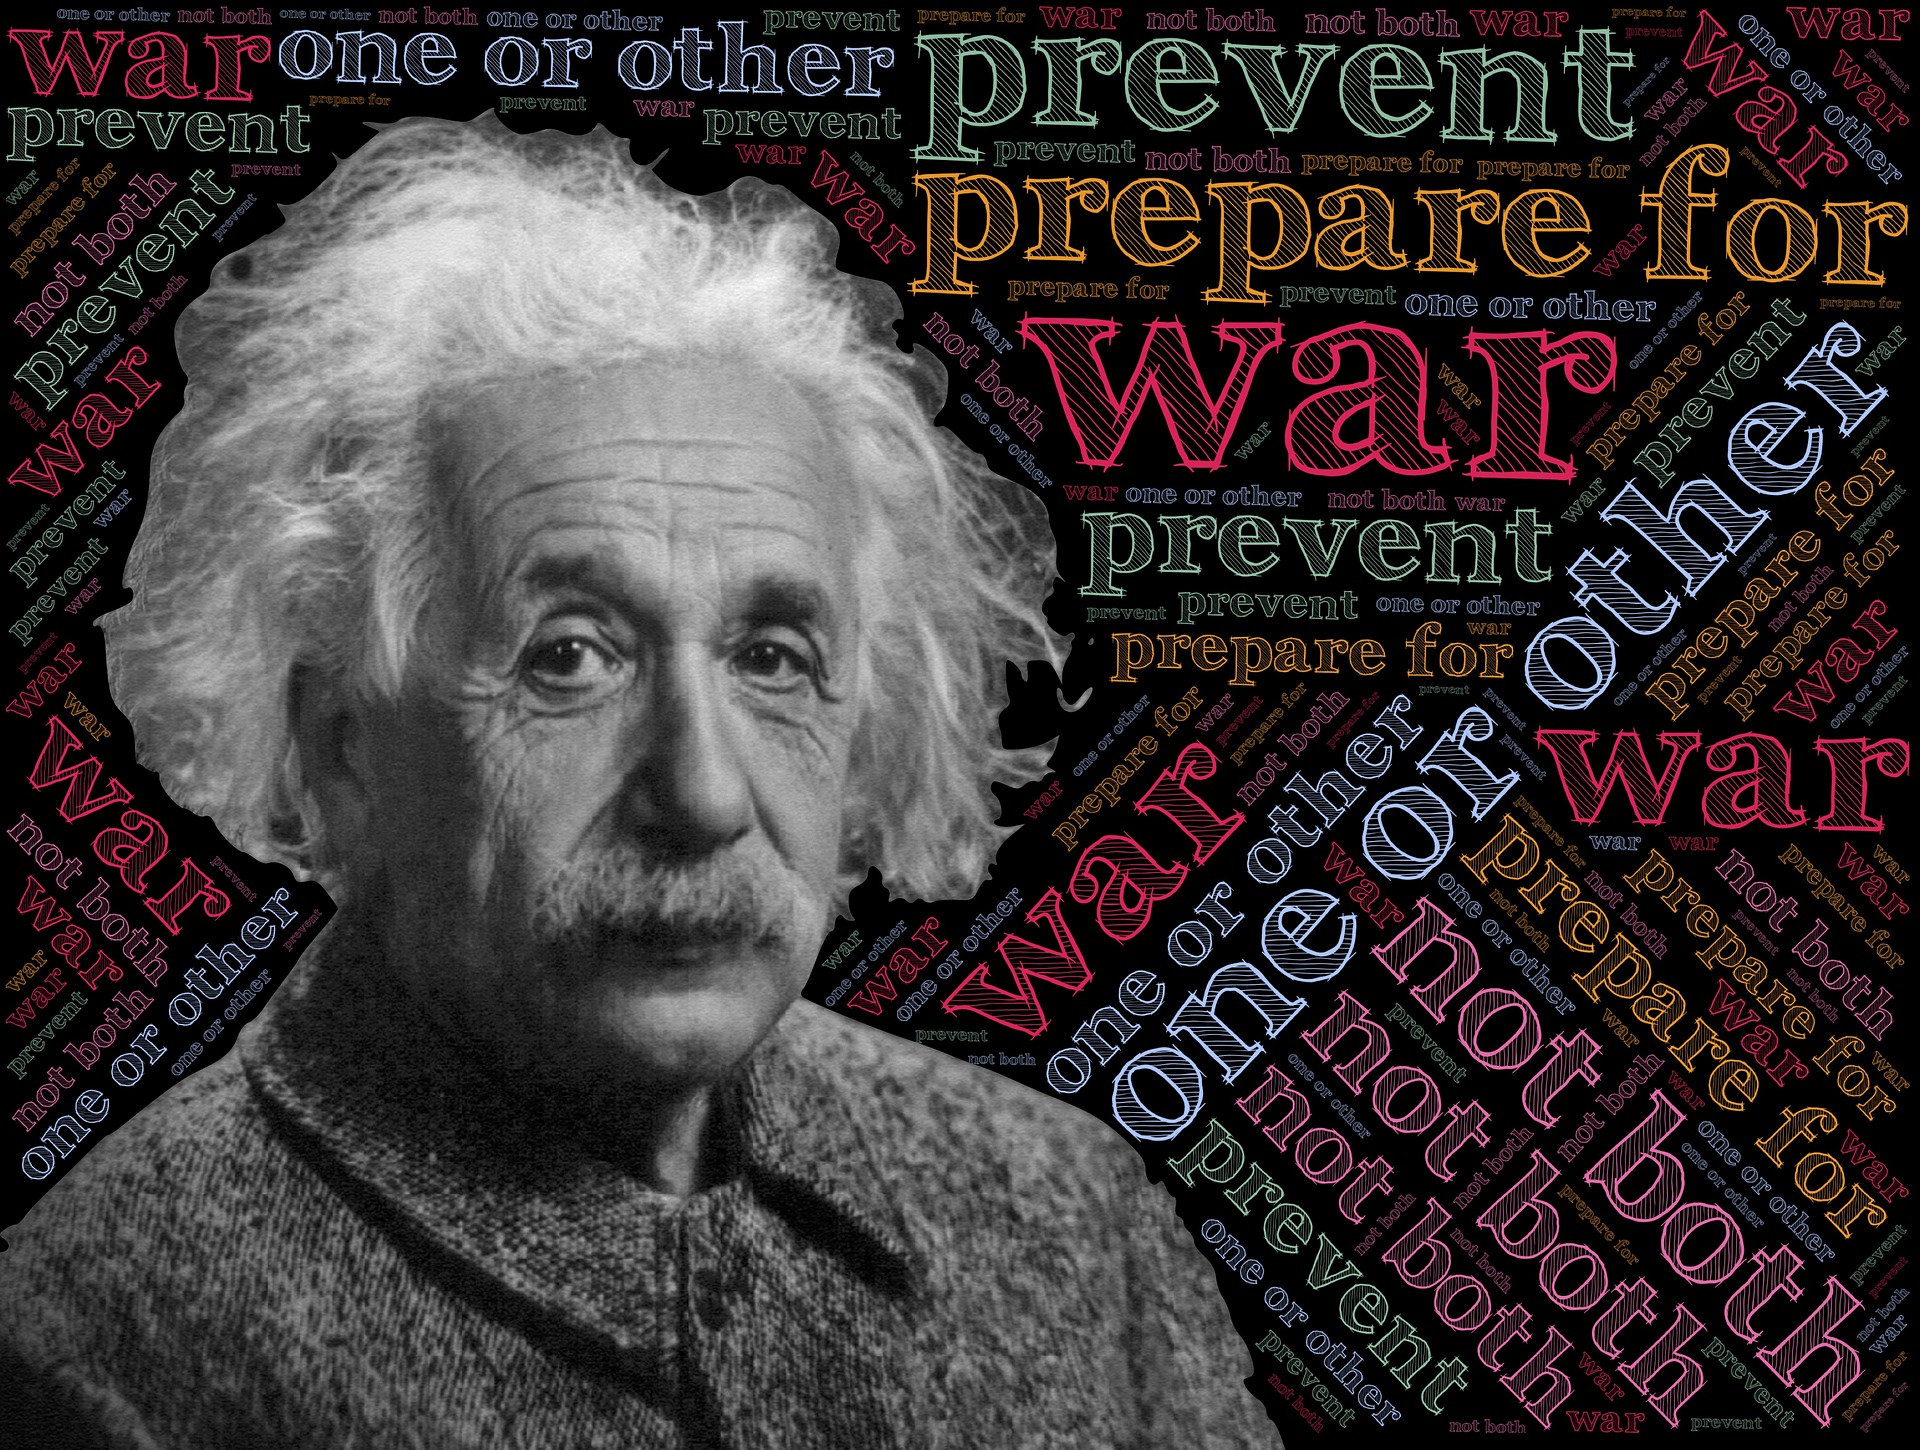 アインシュタインの常識を超えた名言を学べば何した人かは問題ではない ネットビジネスを初心者で副業から成功させ自由を手にしたサトルのブログ